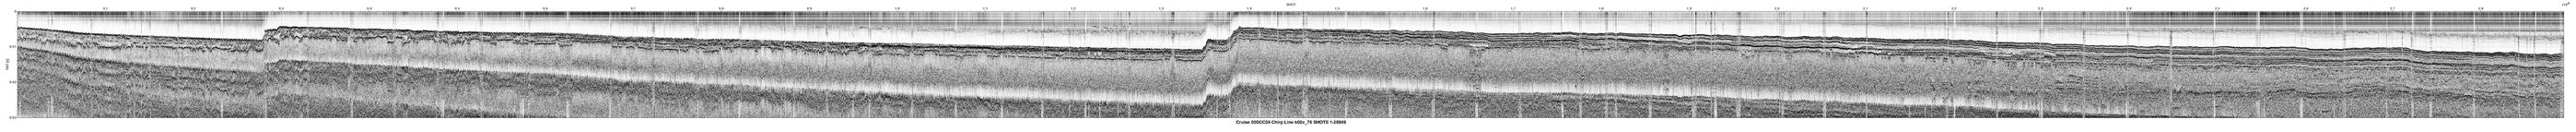 00SCC04 b00c_76 seismic profile image